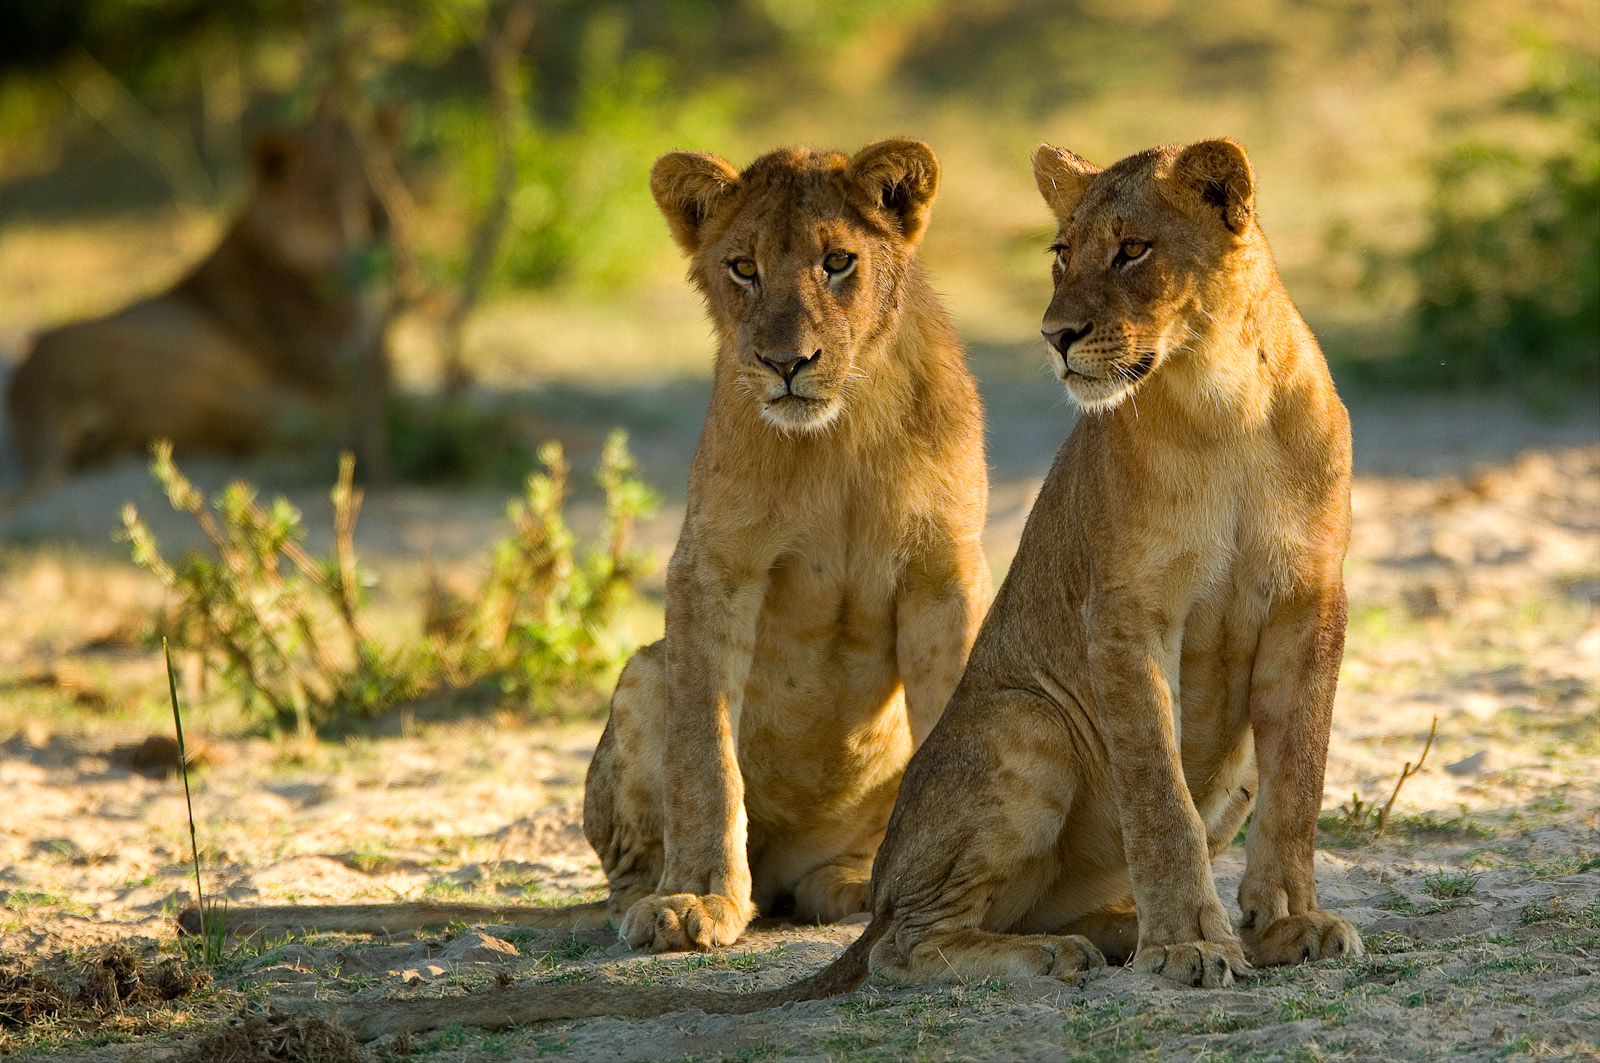 Cubs - Zambia Mobile Walking Safari